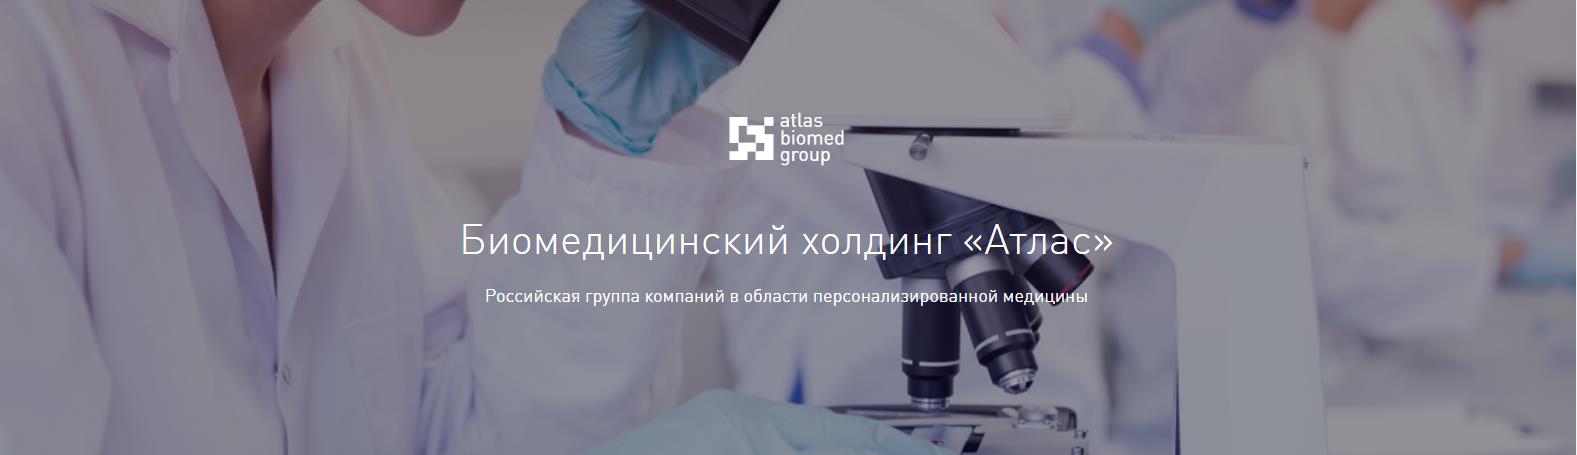 Биомедицинский холдинг «Атлас»  Российская группа компаний в области персонализированной медицины [1]